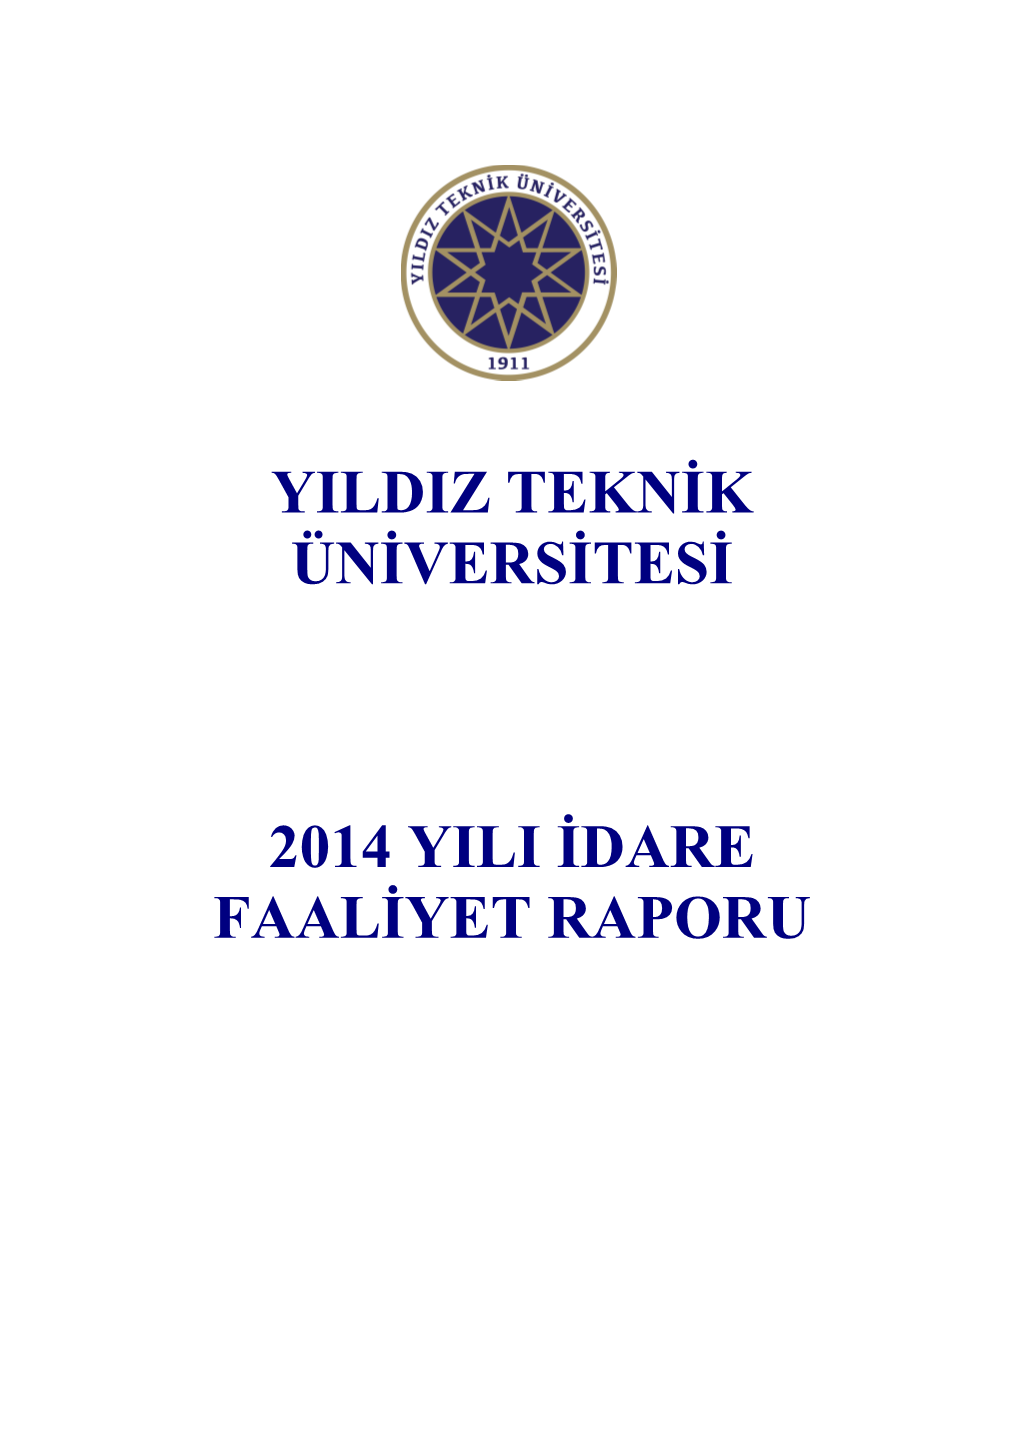 Yıldız Teknik Üniversitesi 2014 Yılı İdare Faaliyet Raporu